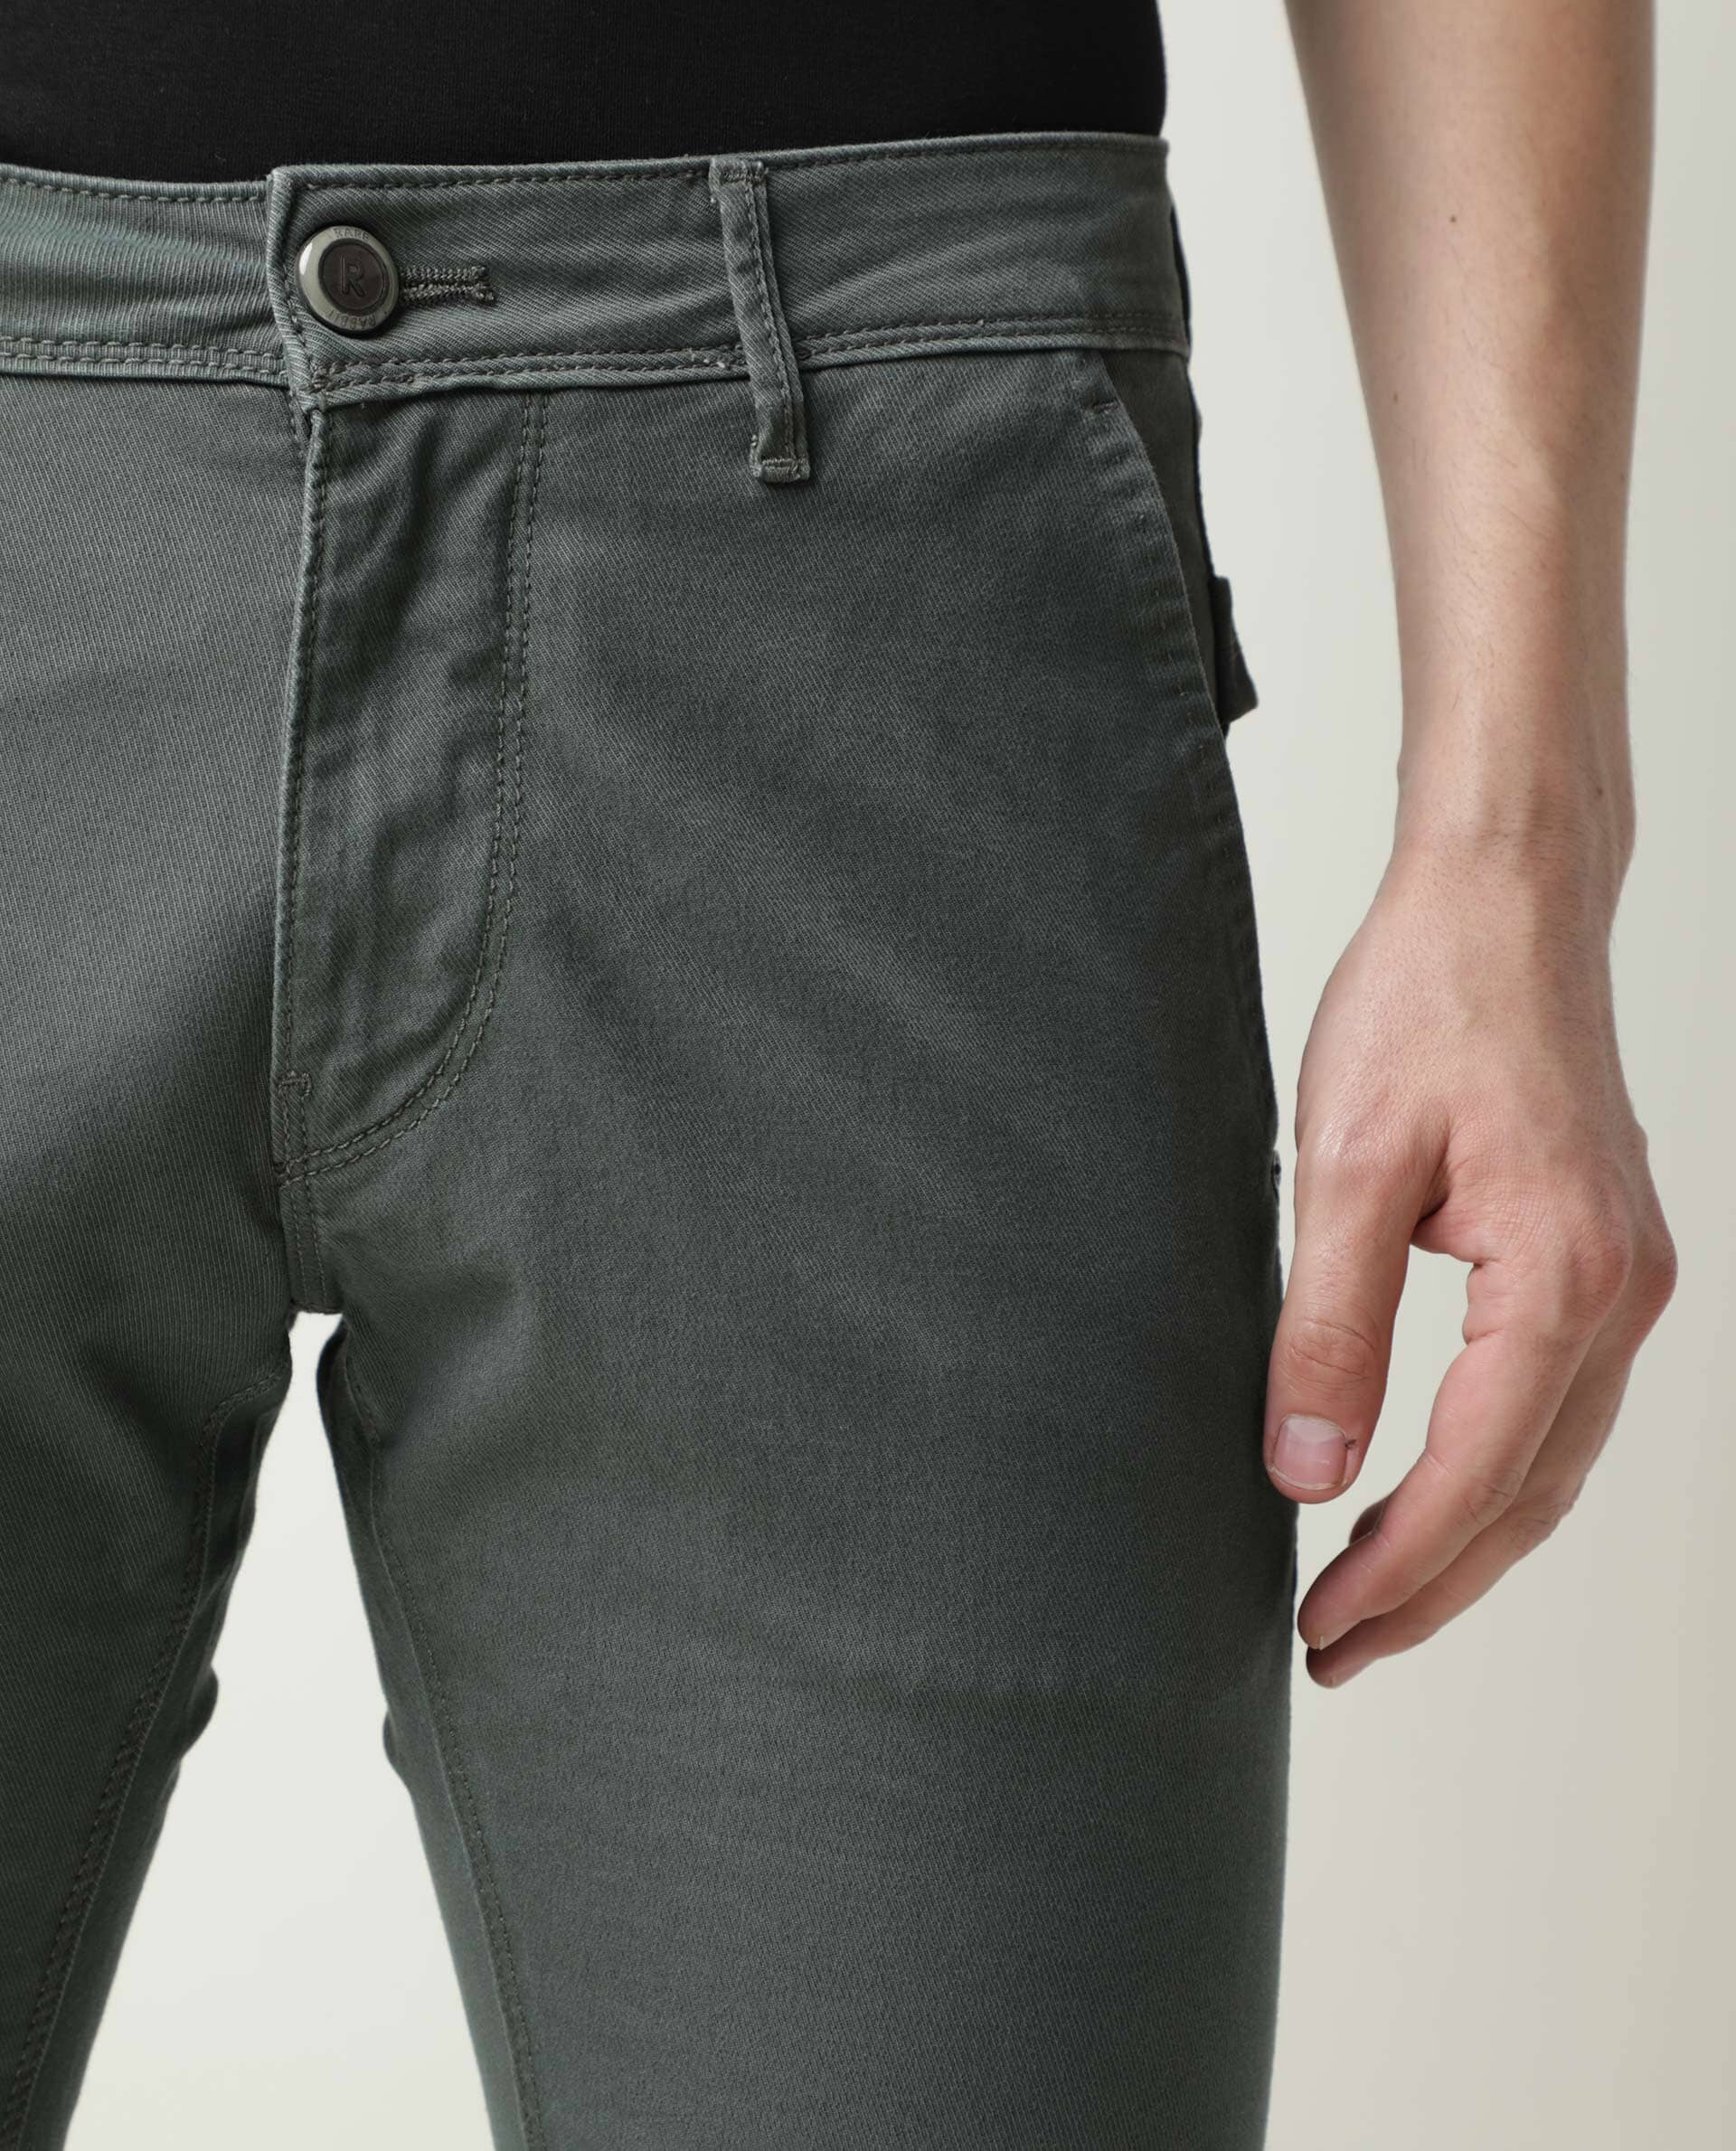 The Best Linen Pants | Abercrombie Linen Pants